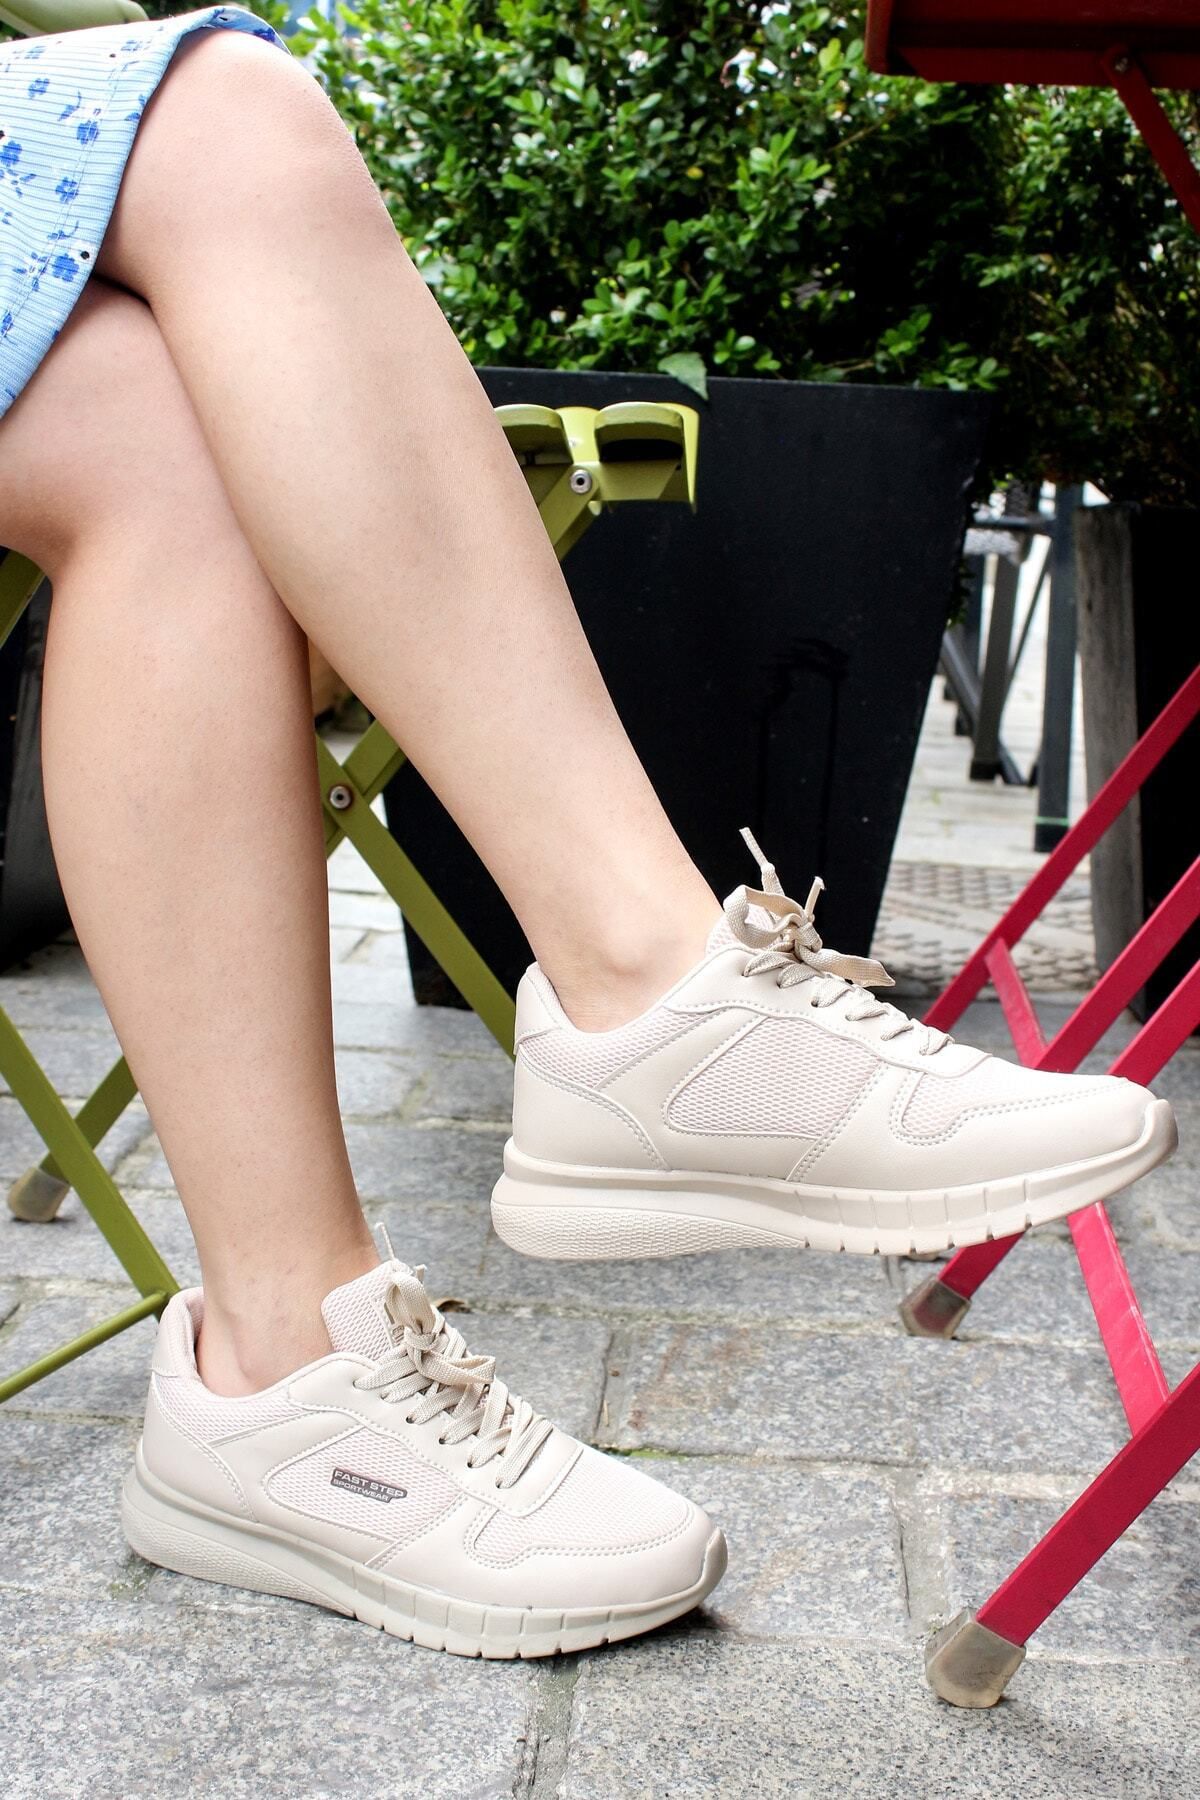 Fast Step Kadın Günlük Sneaker Rahat Spor Yazlık Hafif Ayakkabı 925za012